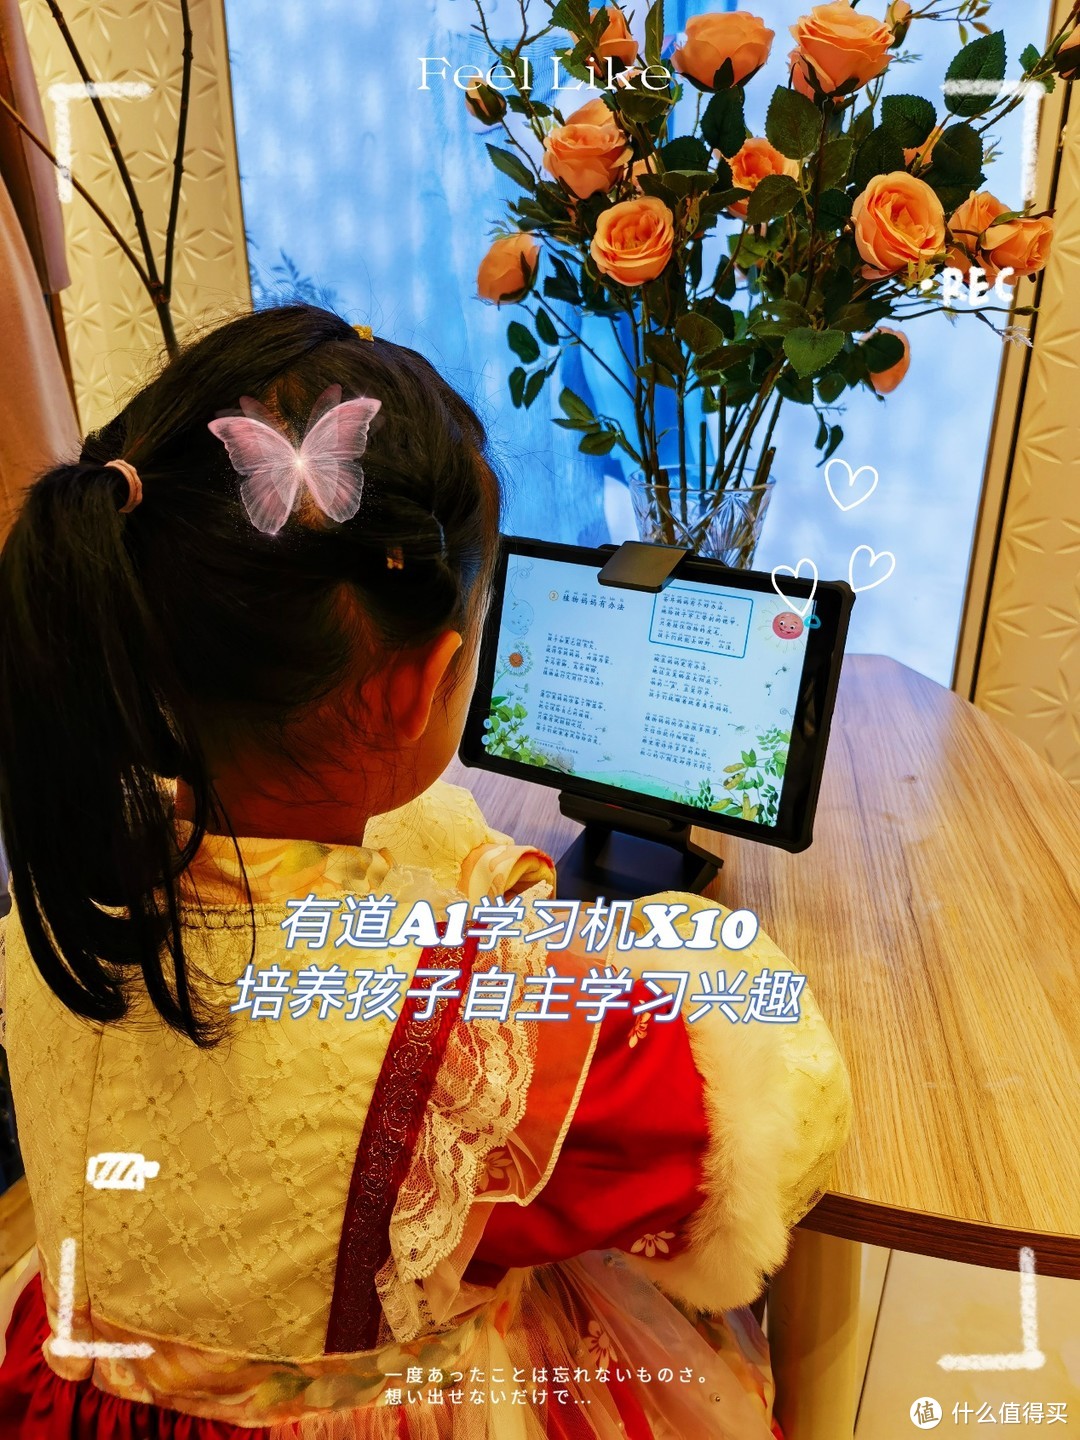 有道 AI 学习机 X10让学习更高效，让孩子更轻松，家长更省心